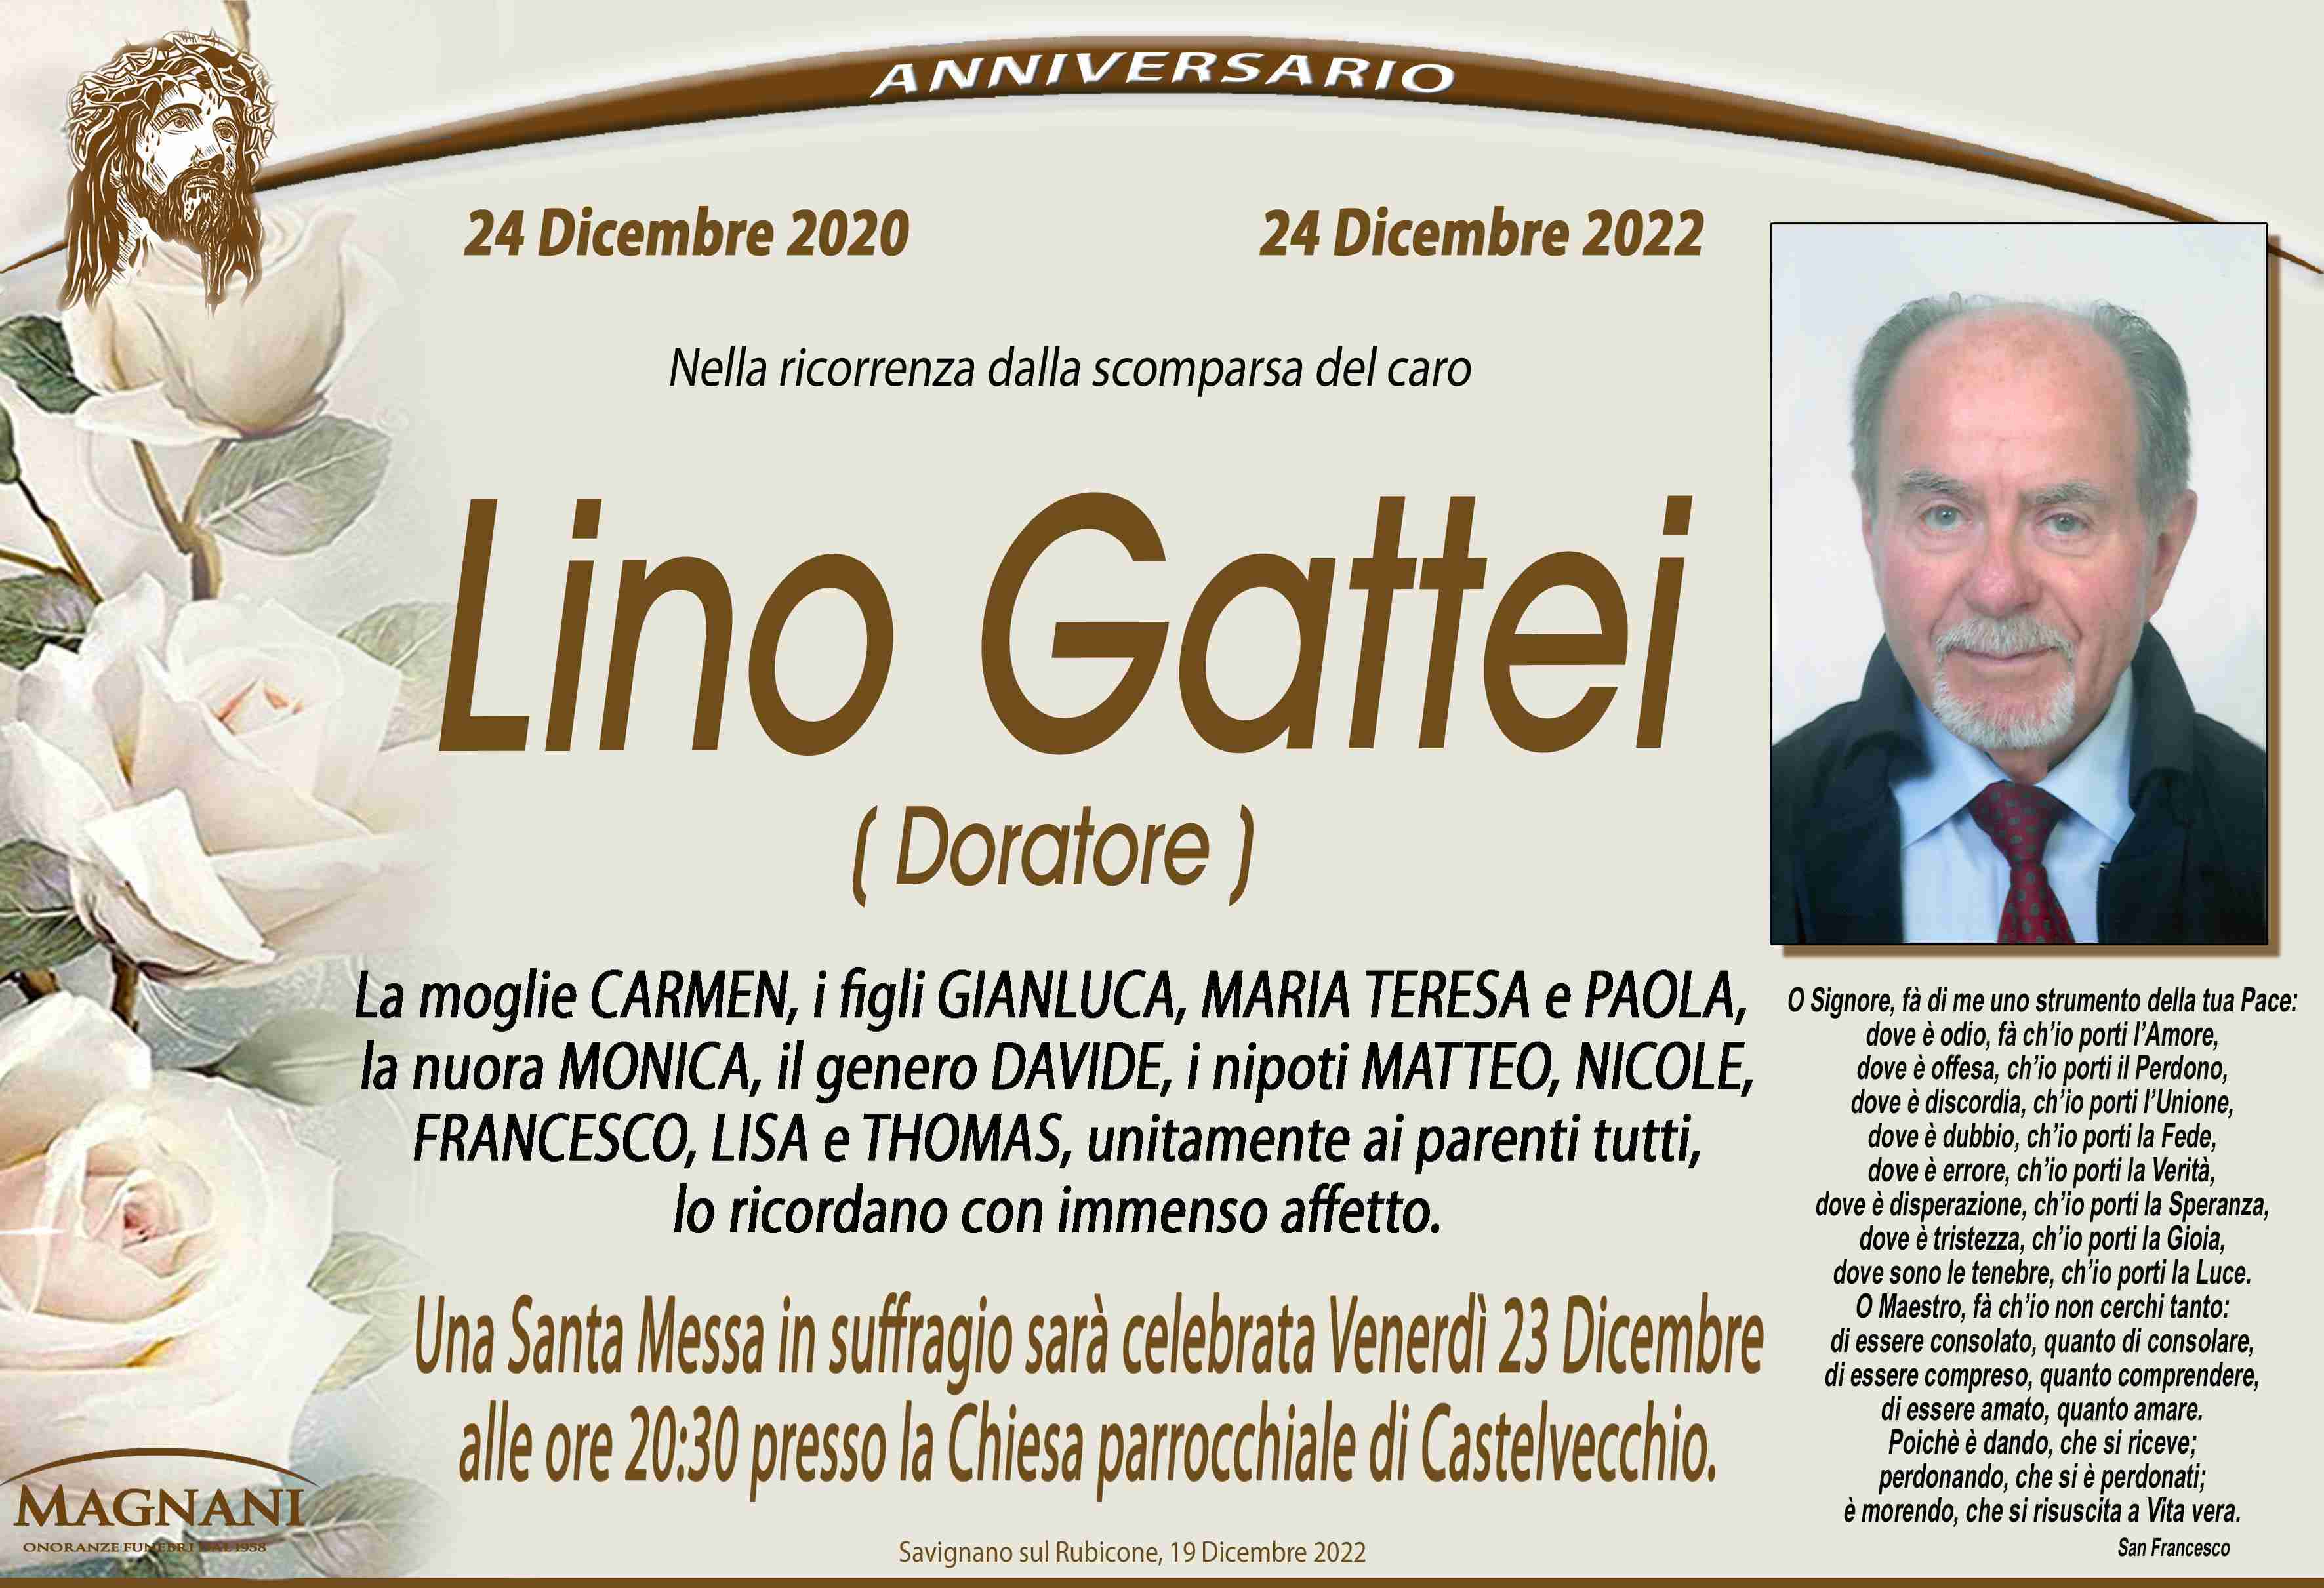 Lino Gattei